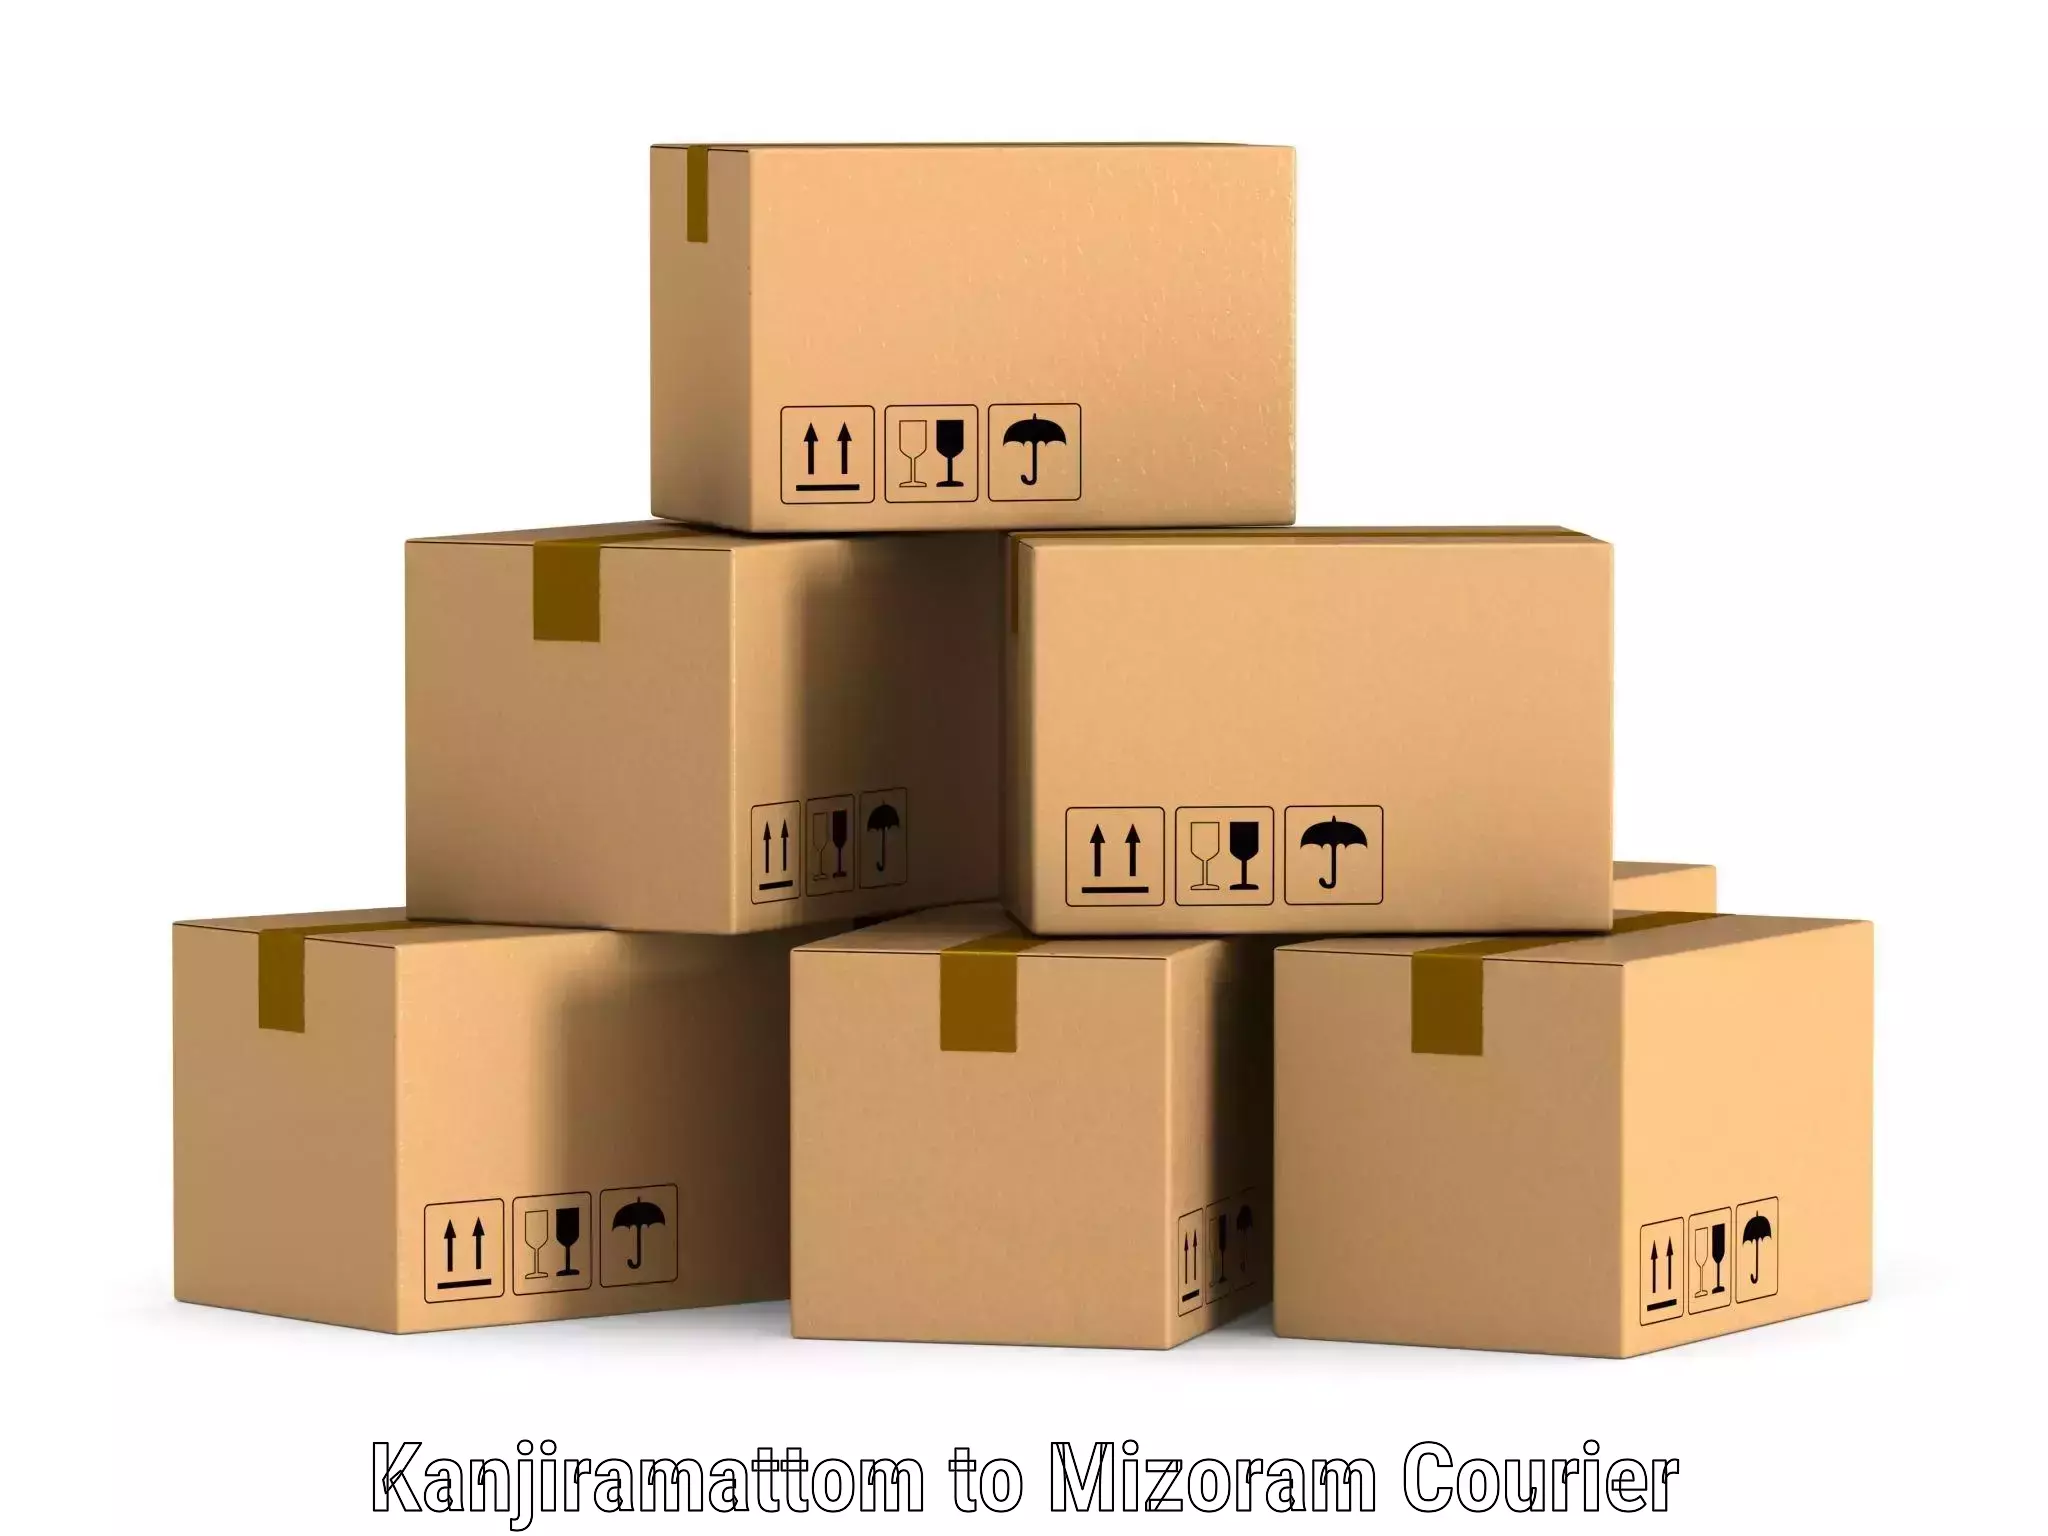 Corporate courier solutions Kanjiramattom to Kolasib